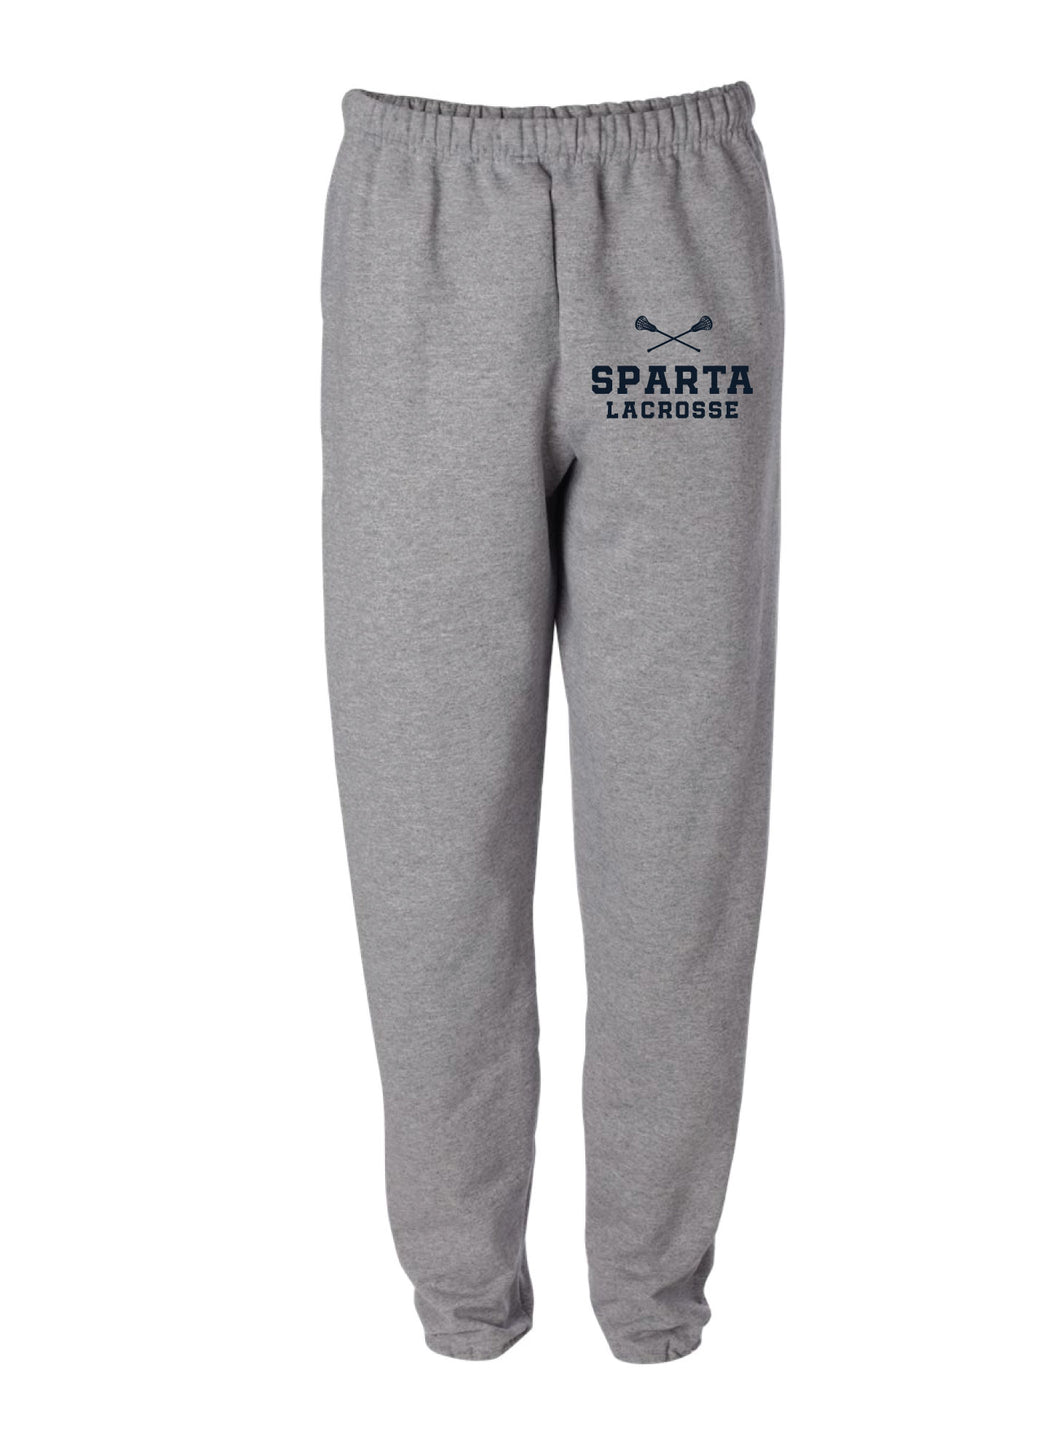 Sparta Lacrosse Cotton Sweatpants - Gray - 5KounT